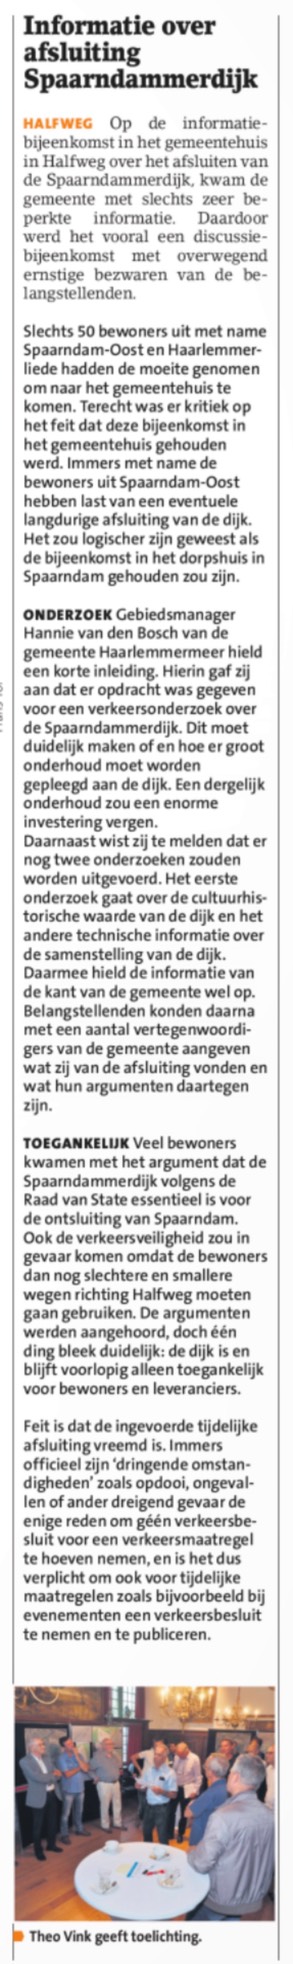 20180913-HCN Informatie over afsluiten Spaarndammerdijk